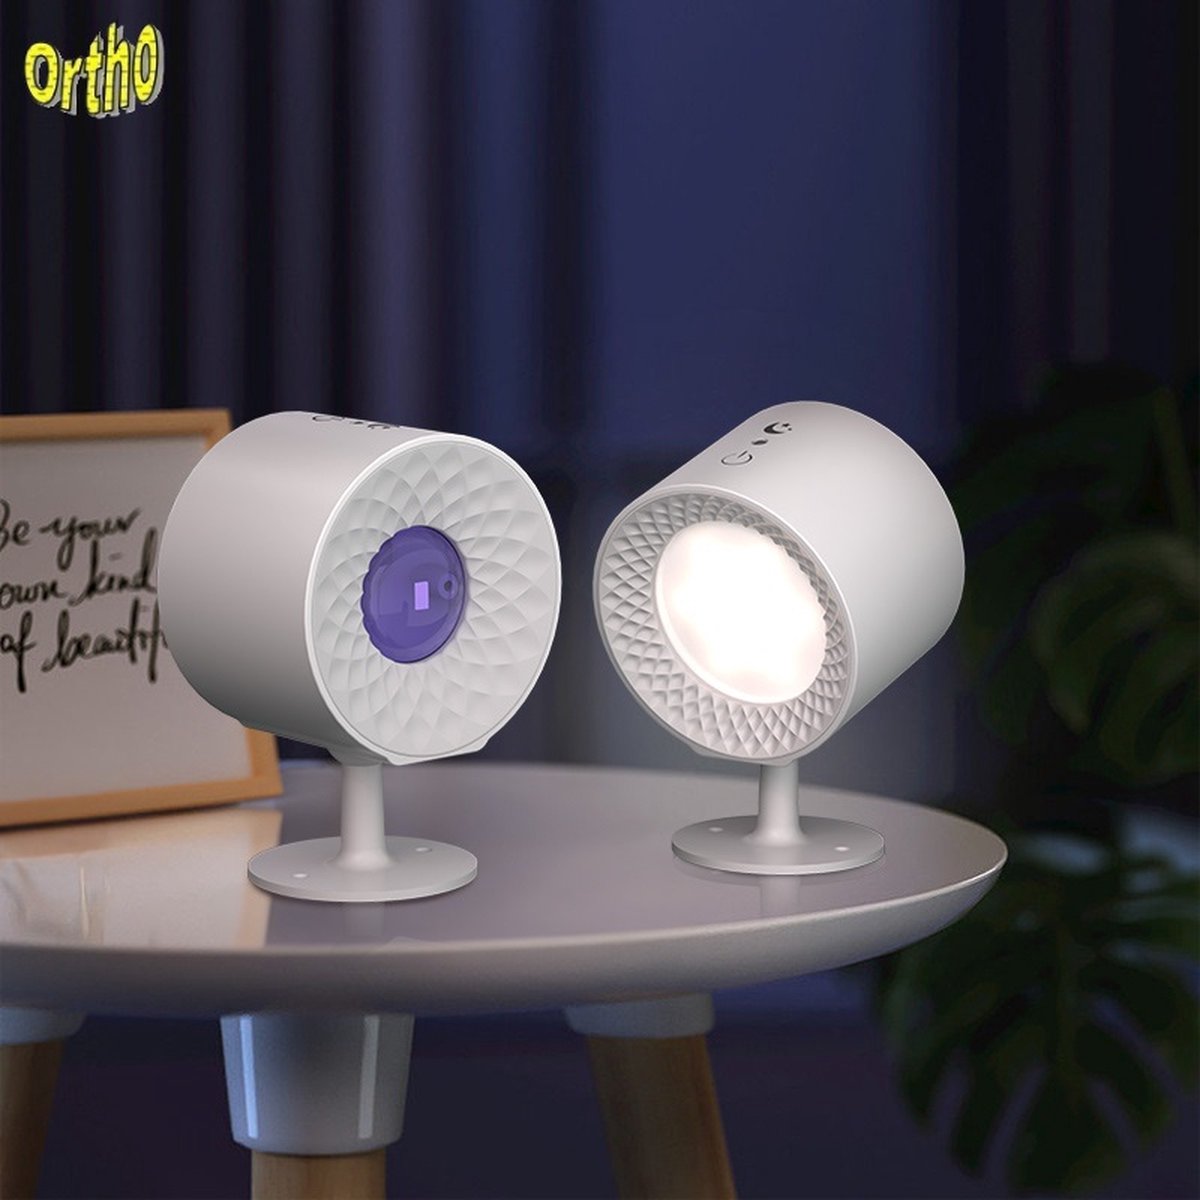 Ortho® - Oplaadbare LED Wandlamp - Nachtlampje - 360° Roterende Magnetische Bal - Timer functie - 9 RGB Kleuren én Wit Licht - USB oplaadbaar - Eventueel bevestigen zonder Schroeven - Wit & RGB licht - Wit